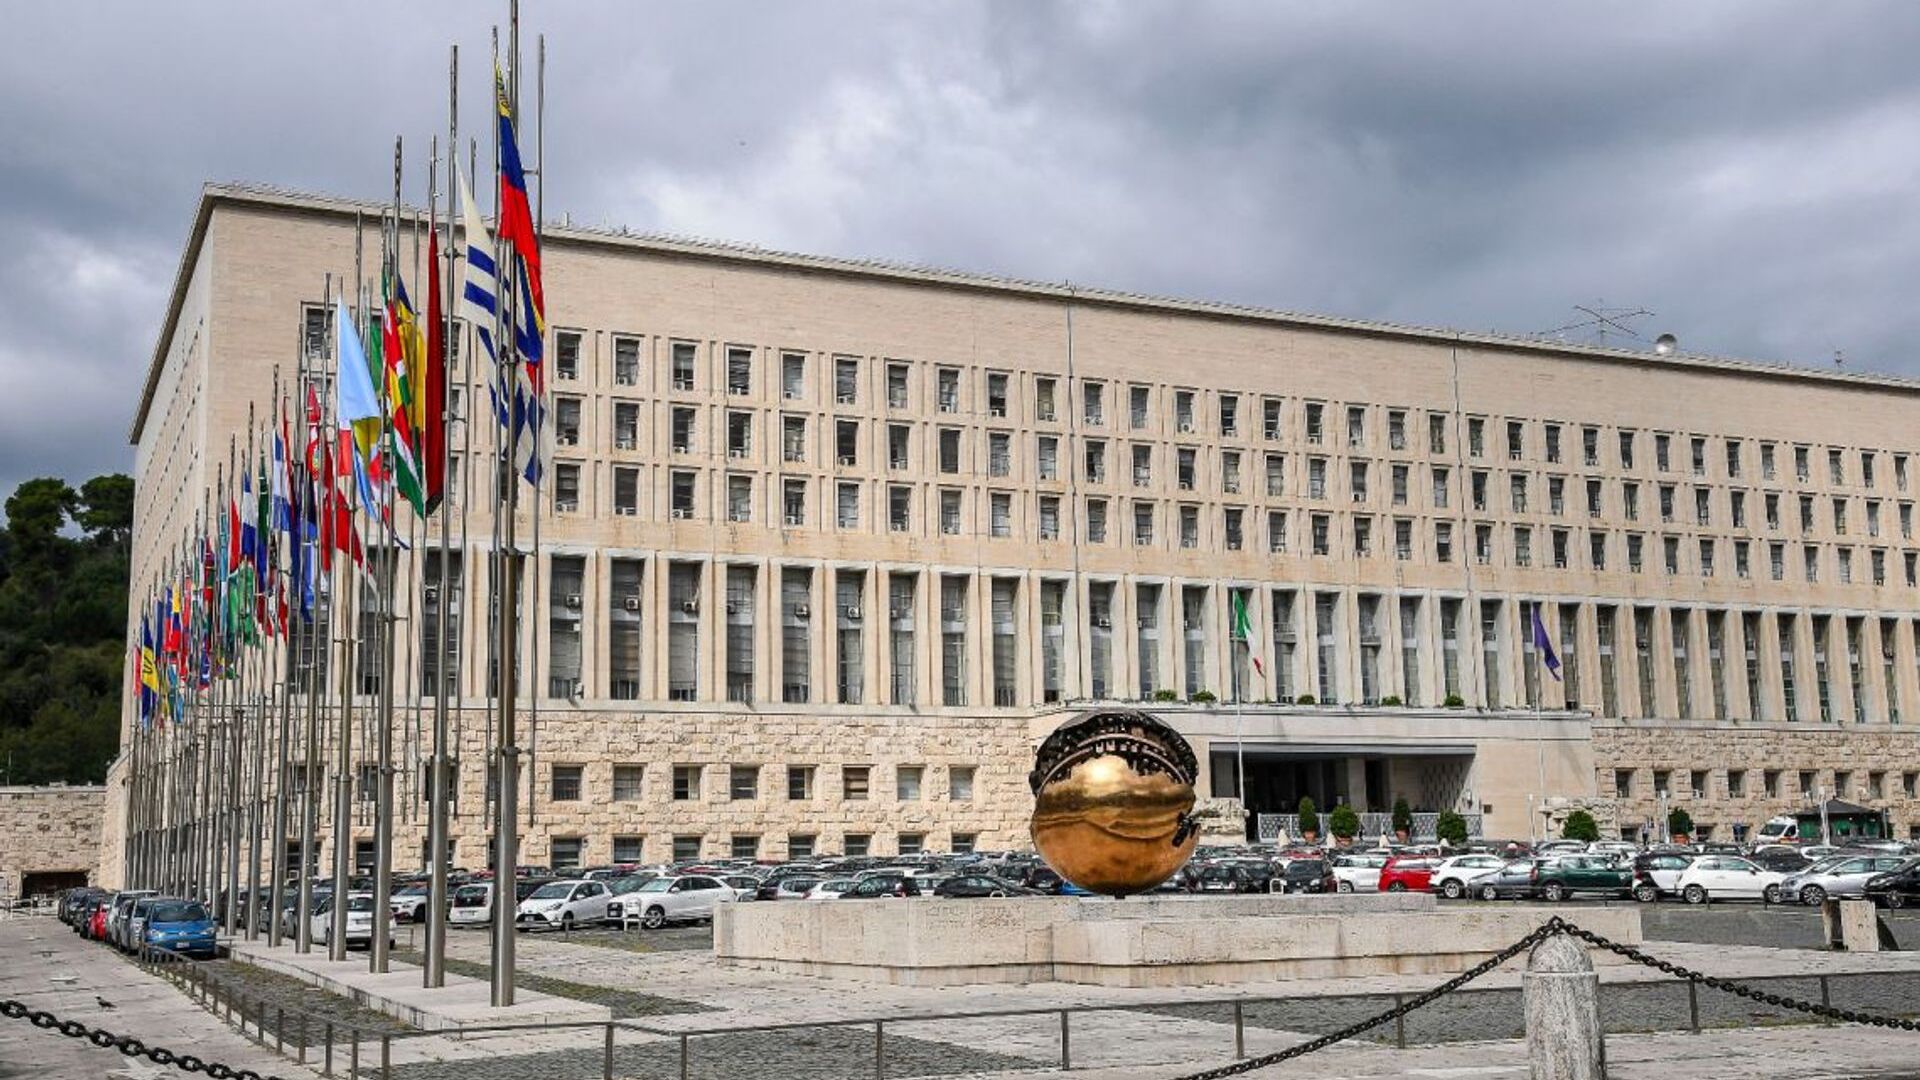 Հռոմում գտնվող Պալացցո դելլա Ֆարնեսինա պալատում է գտնվում Արտաքին գործերի և միջազգային համագործակցության նախարարությունը